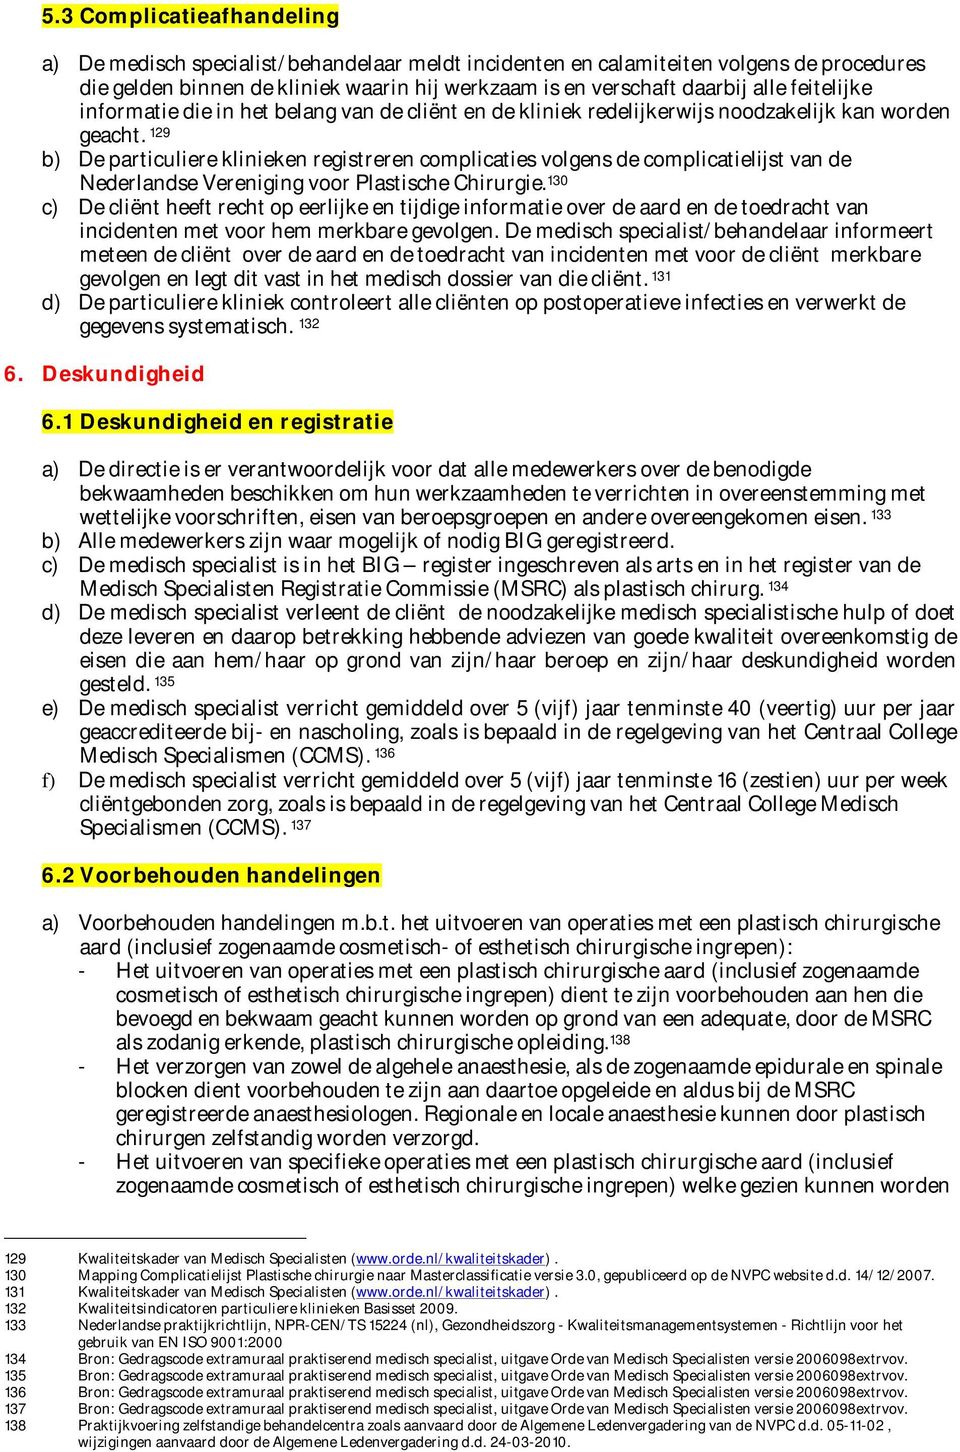 129 b) De particuliere klinieken registreren complicaties volgens de complicatielijst van de Nederlandse Vereniging voor Plastische Chirurgie.